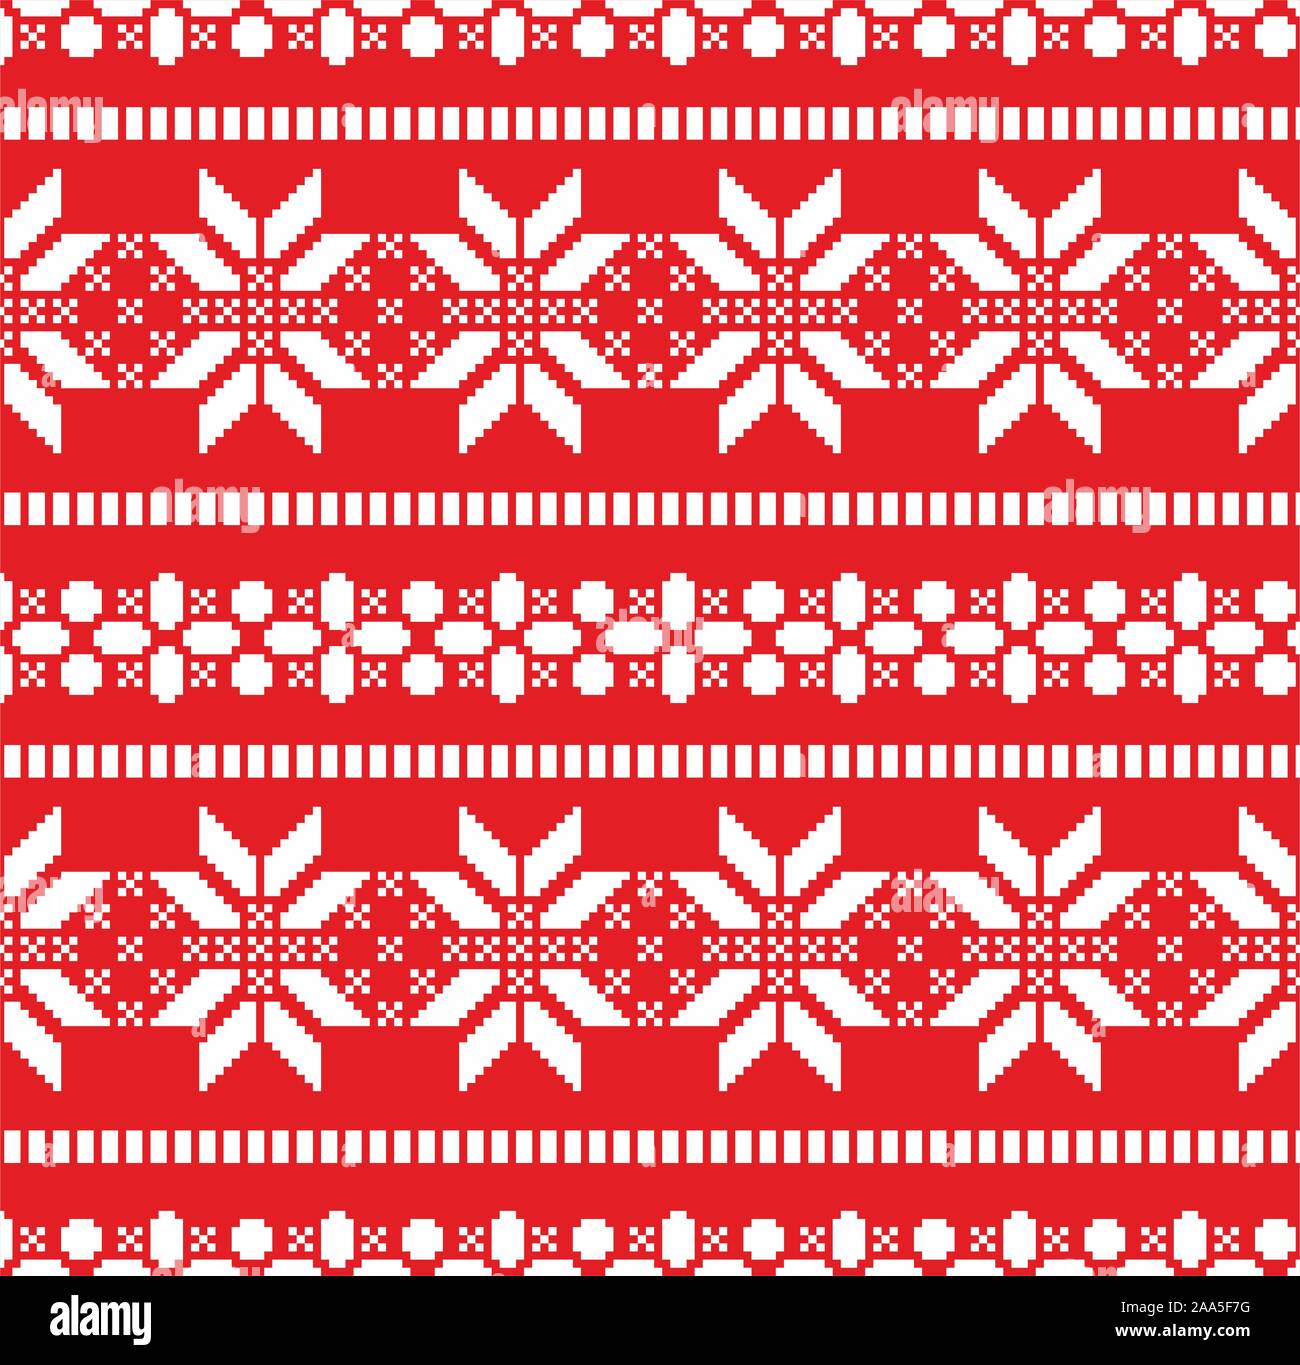 Illustrazione del disegno di Natale con fiocchi di neve bianca su sfondo rosso. Anno nuovo senza giunture per la stampa di carta o tessuto. Maglione texture. - Vettore Illustrazione Vettoriale